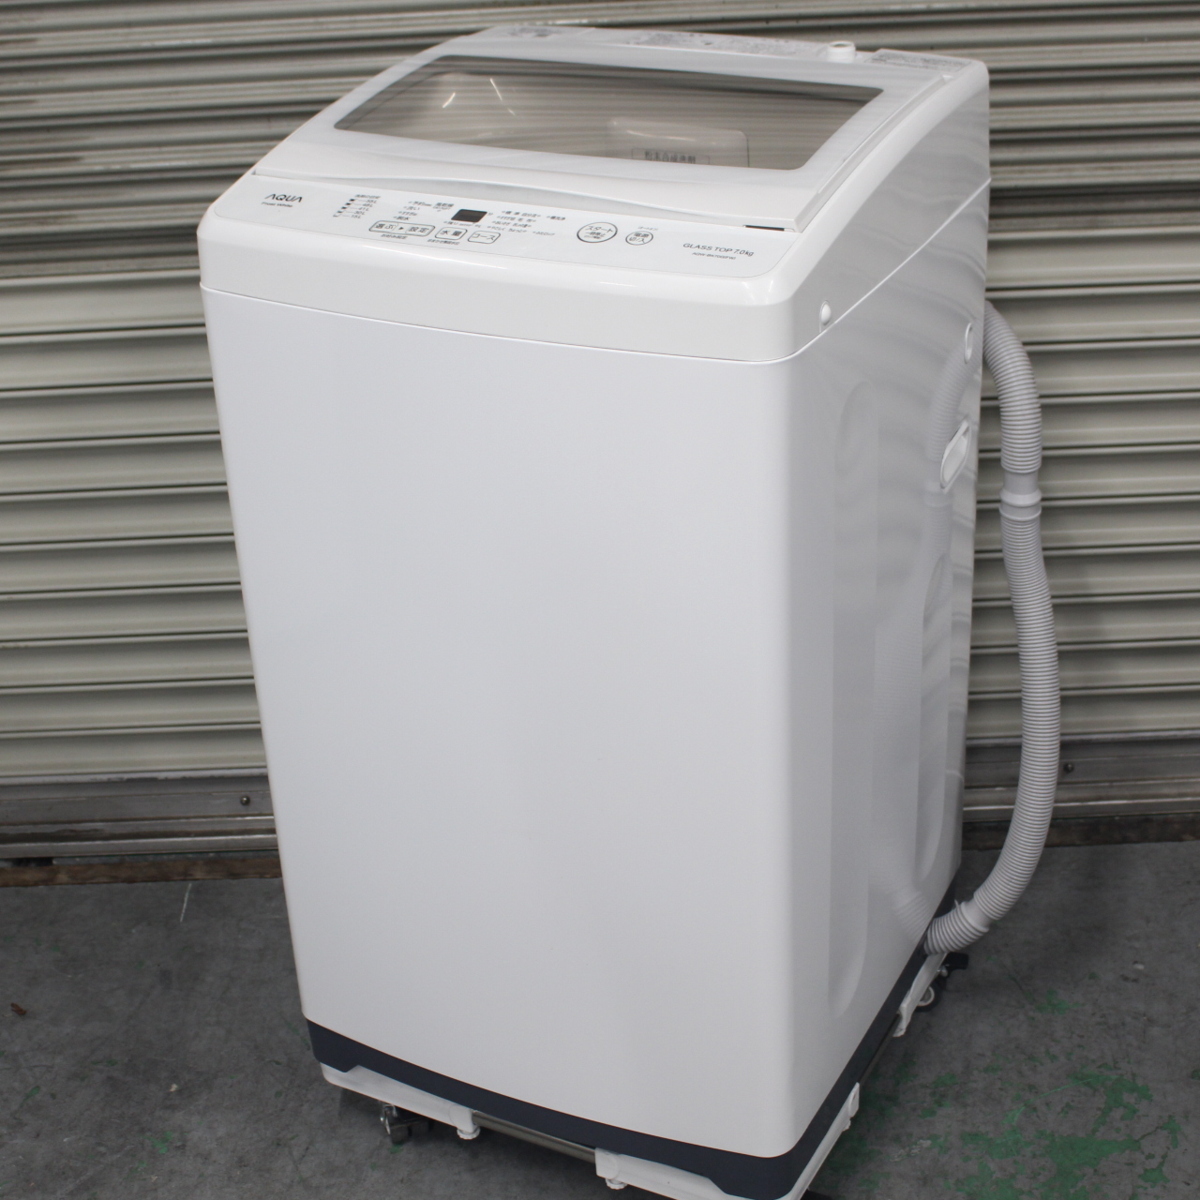 川崎市中原区にて アクア 全自動洗濯機 AQW-BK70G 2019年製 を出張買取させて頂きました。